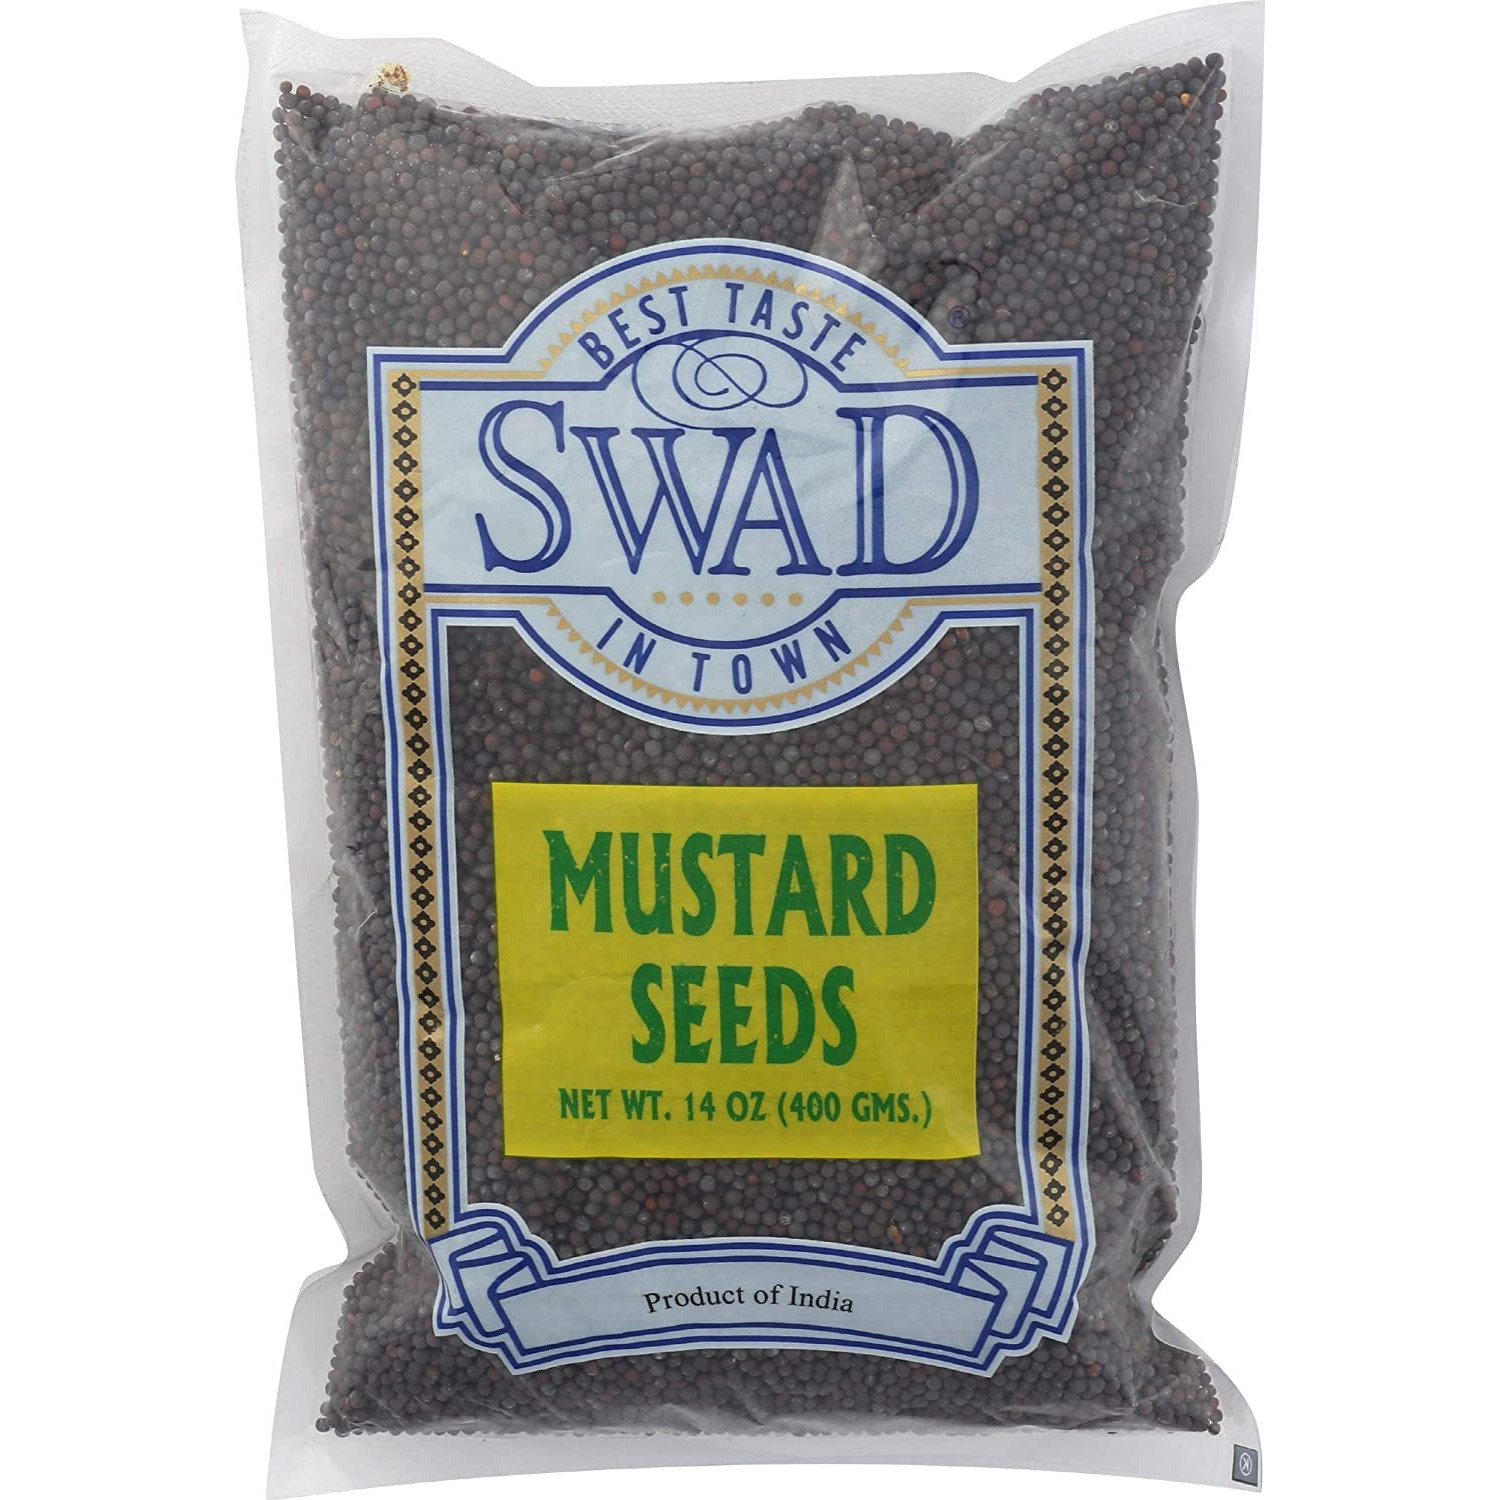 Swad Mustard Seeds 400